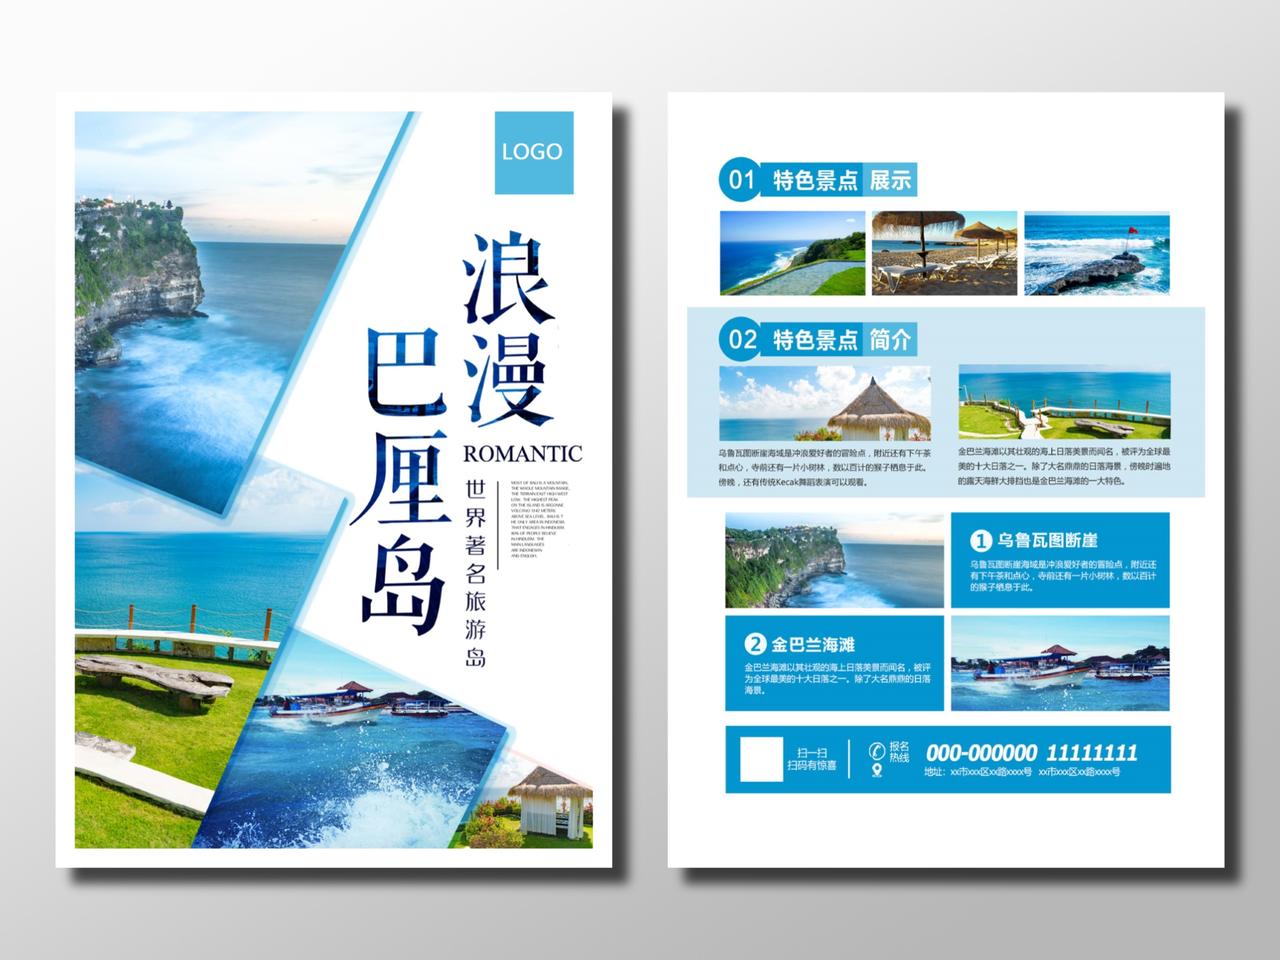 旅游旅行社景点介绍海岛青蓝色浪漫巴厘岛旅游景点宣传册宣传单